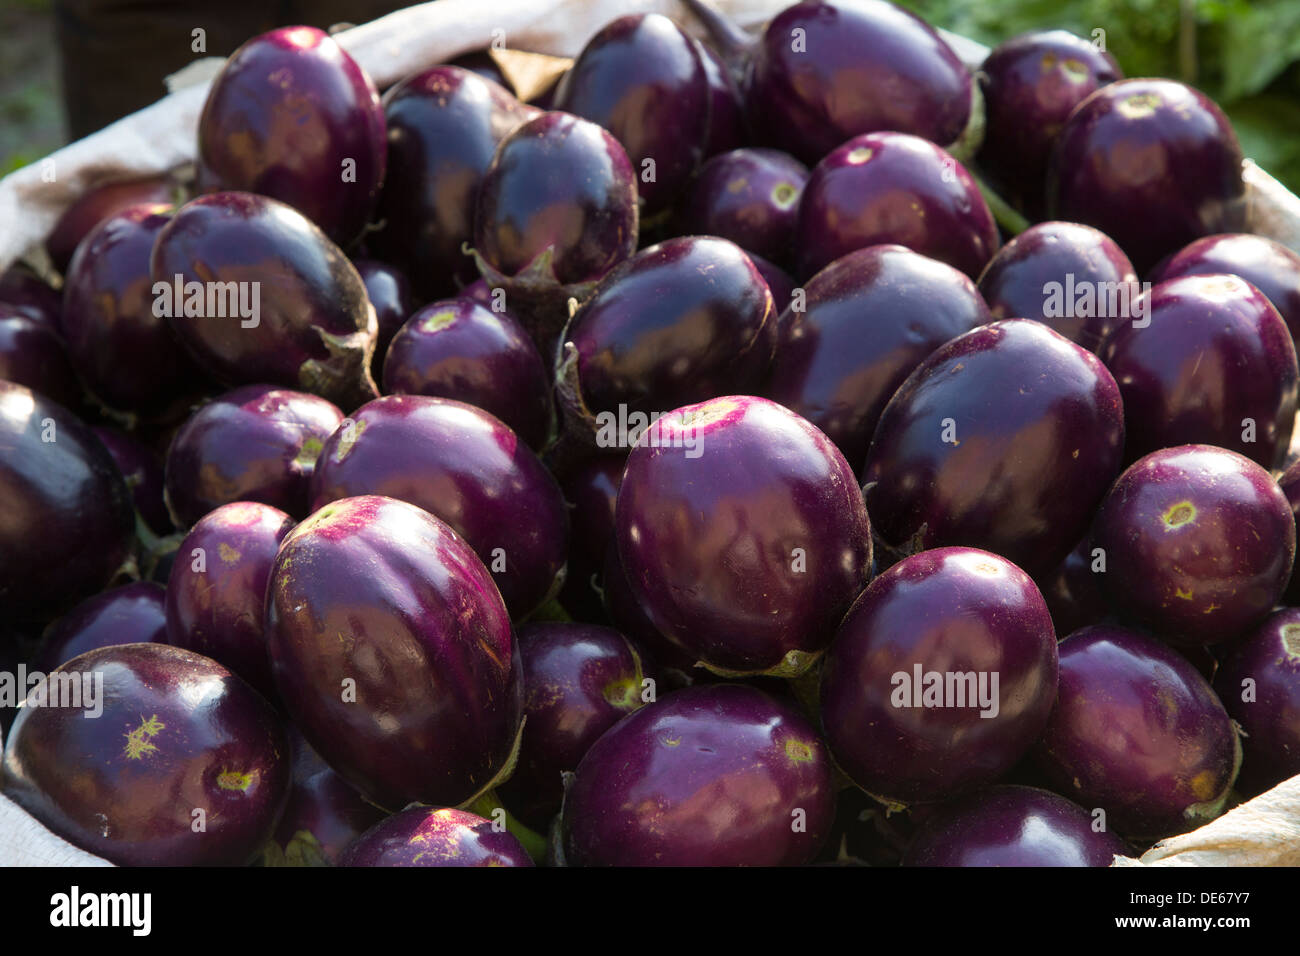 L'Inde, Uttar Pradesh, Agra, aubergines au marché aux légumes Banque D'Images